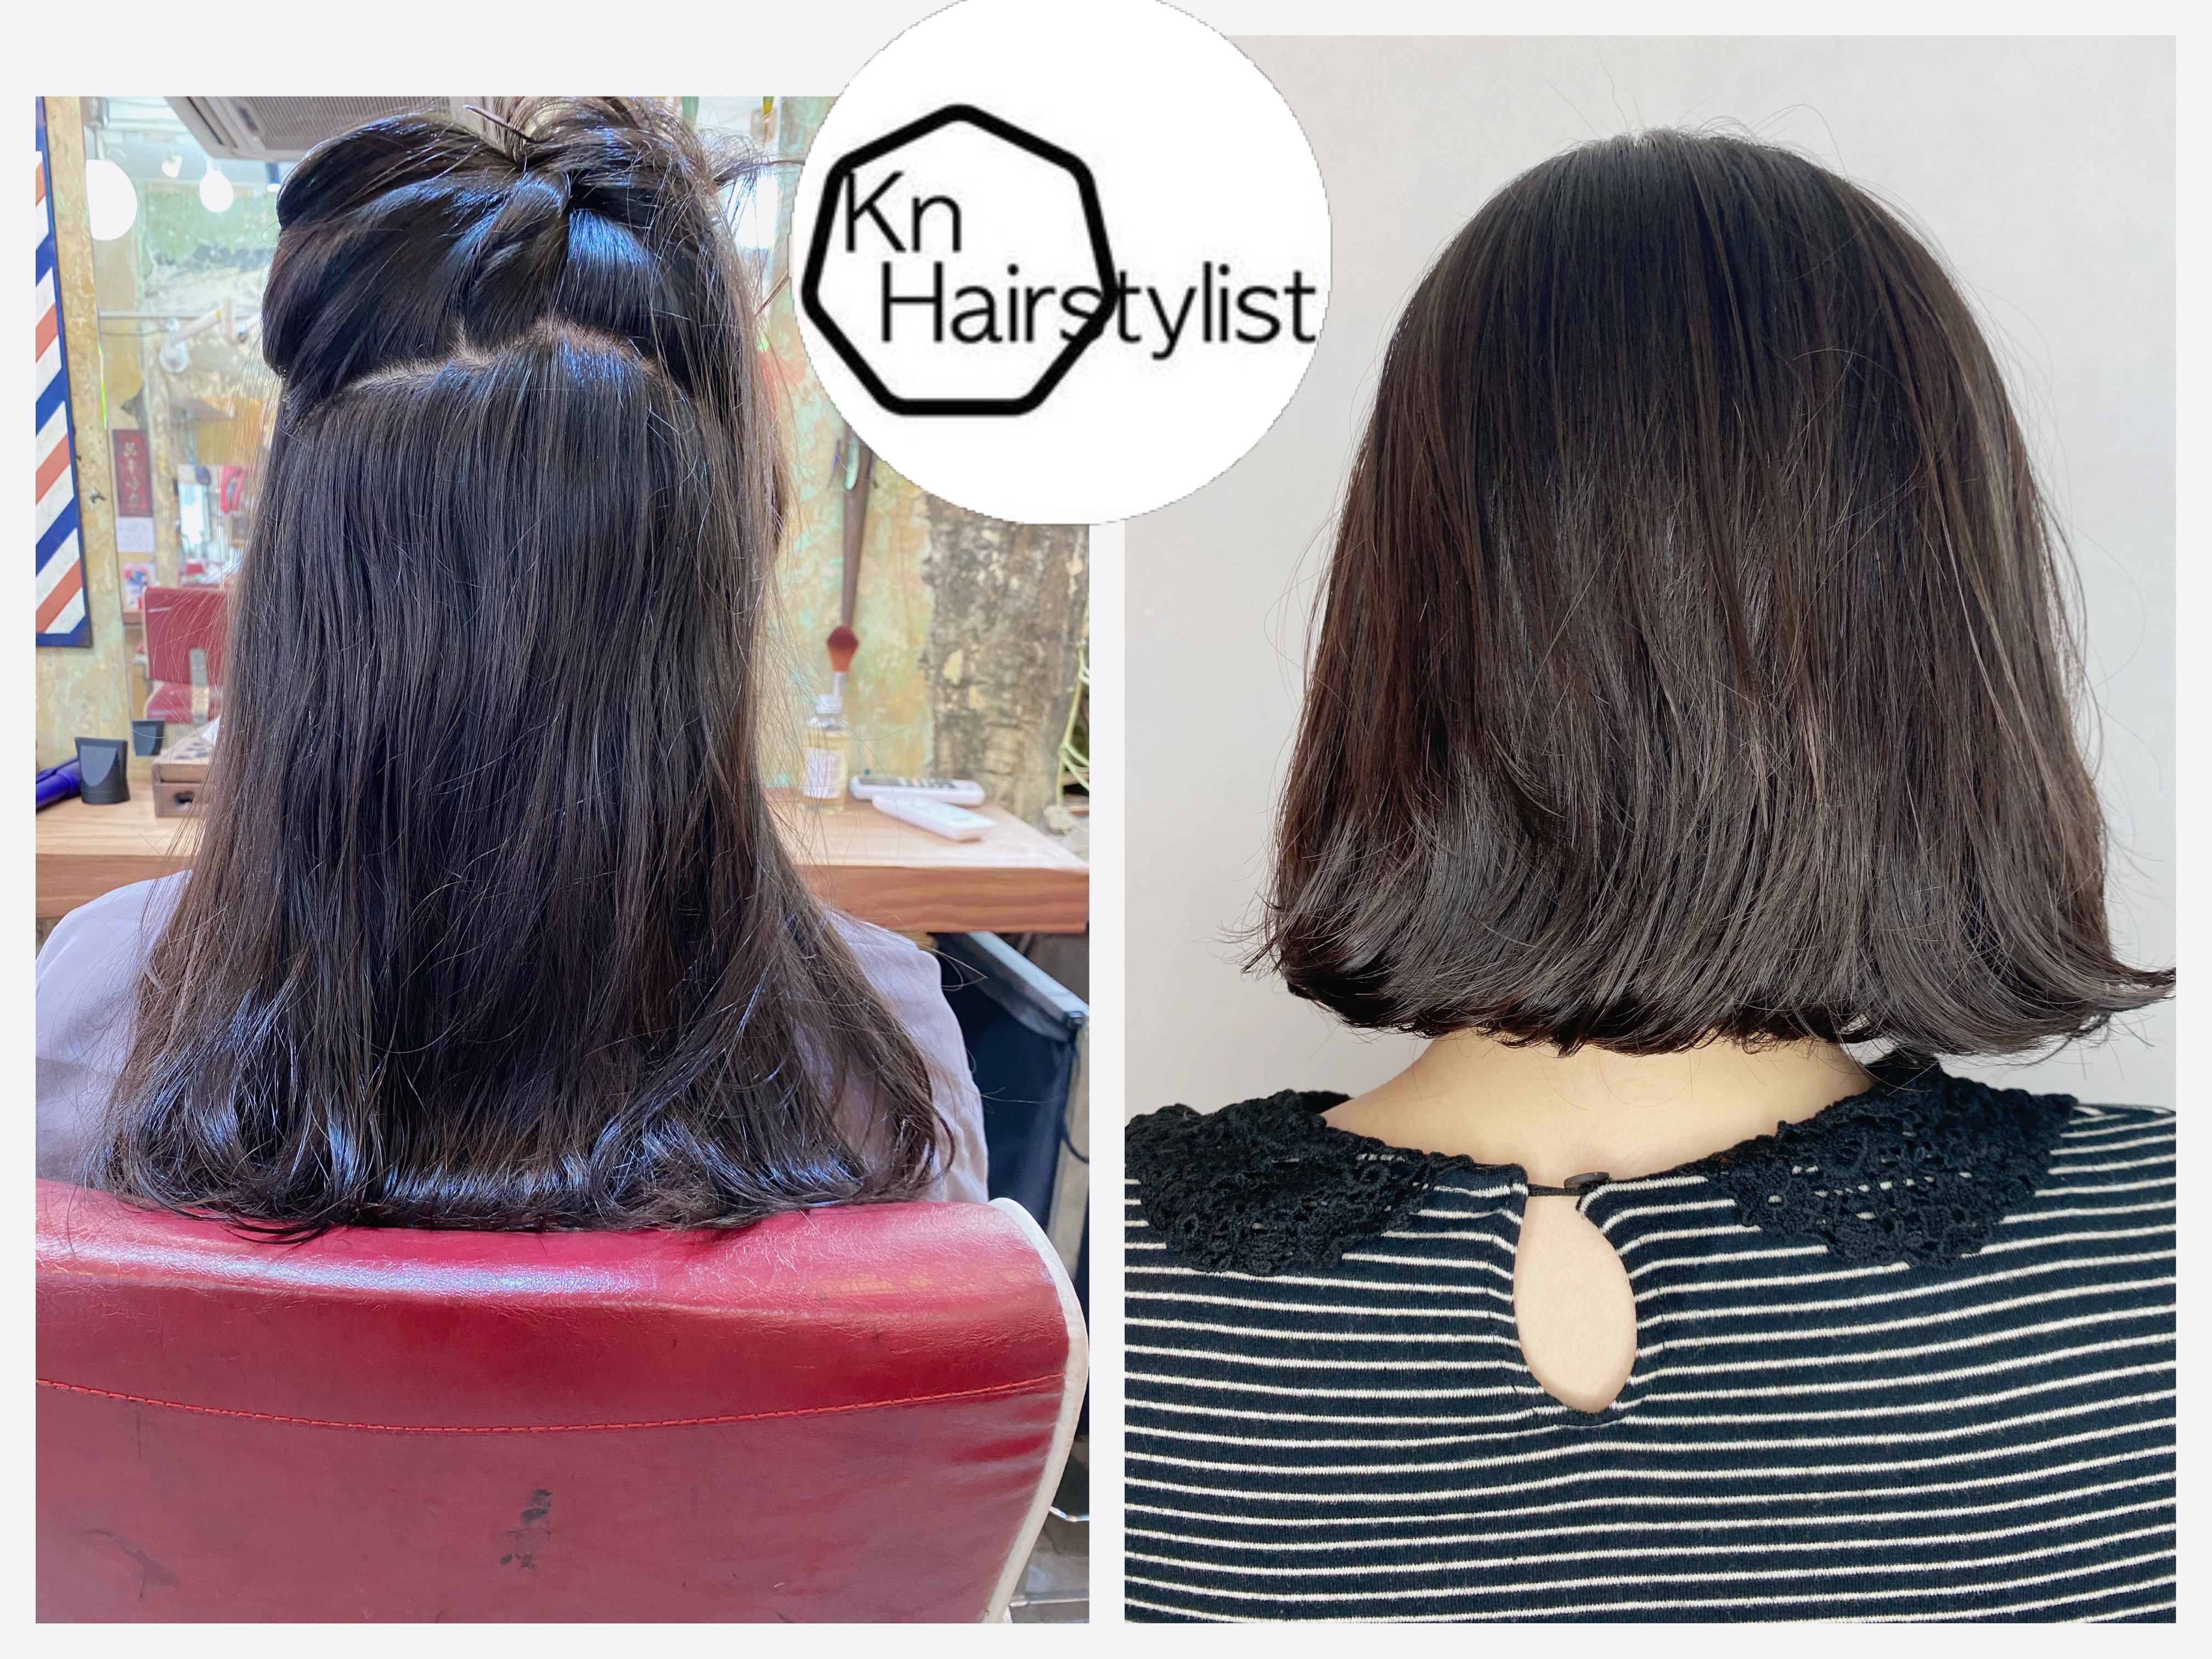 KN hair stylist髮型作品: 自然處理光感電髮